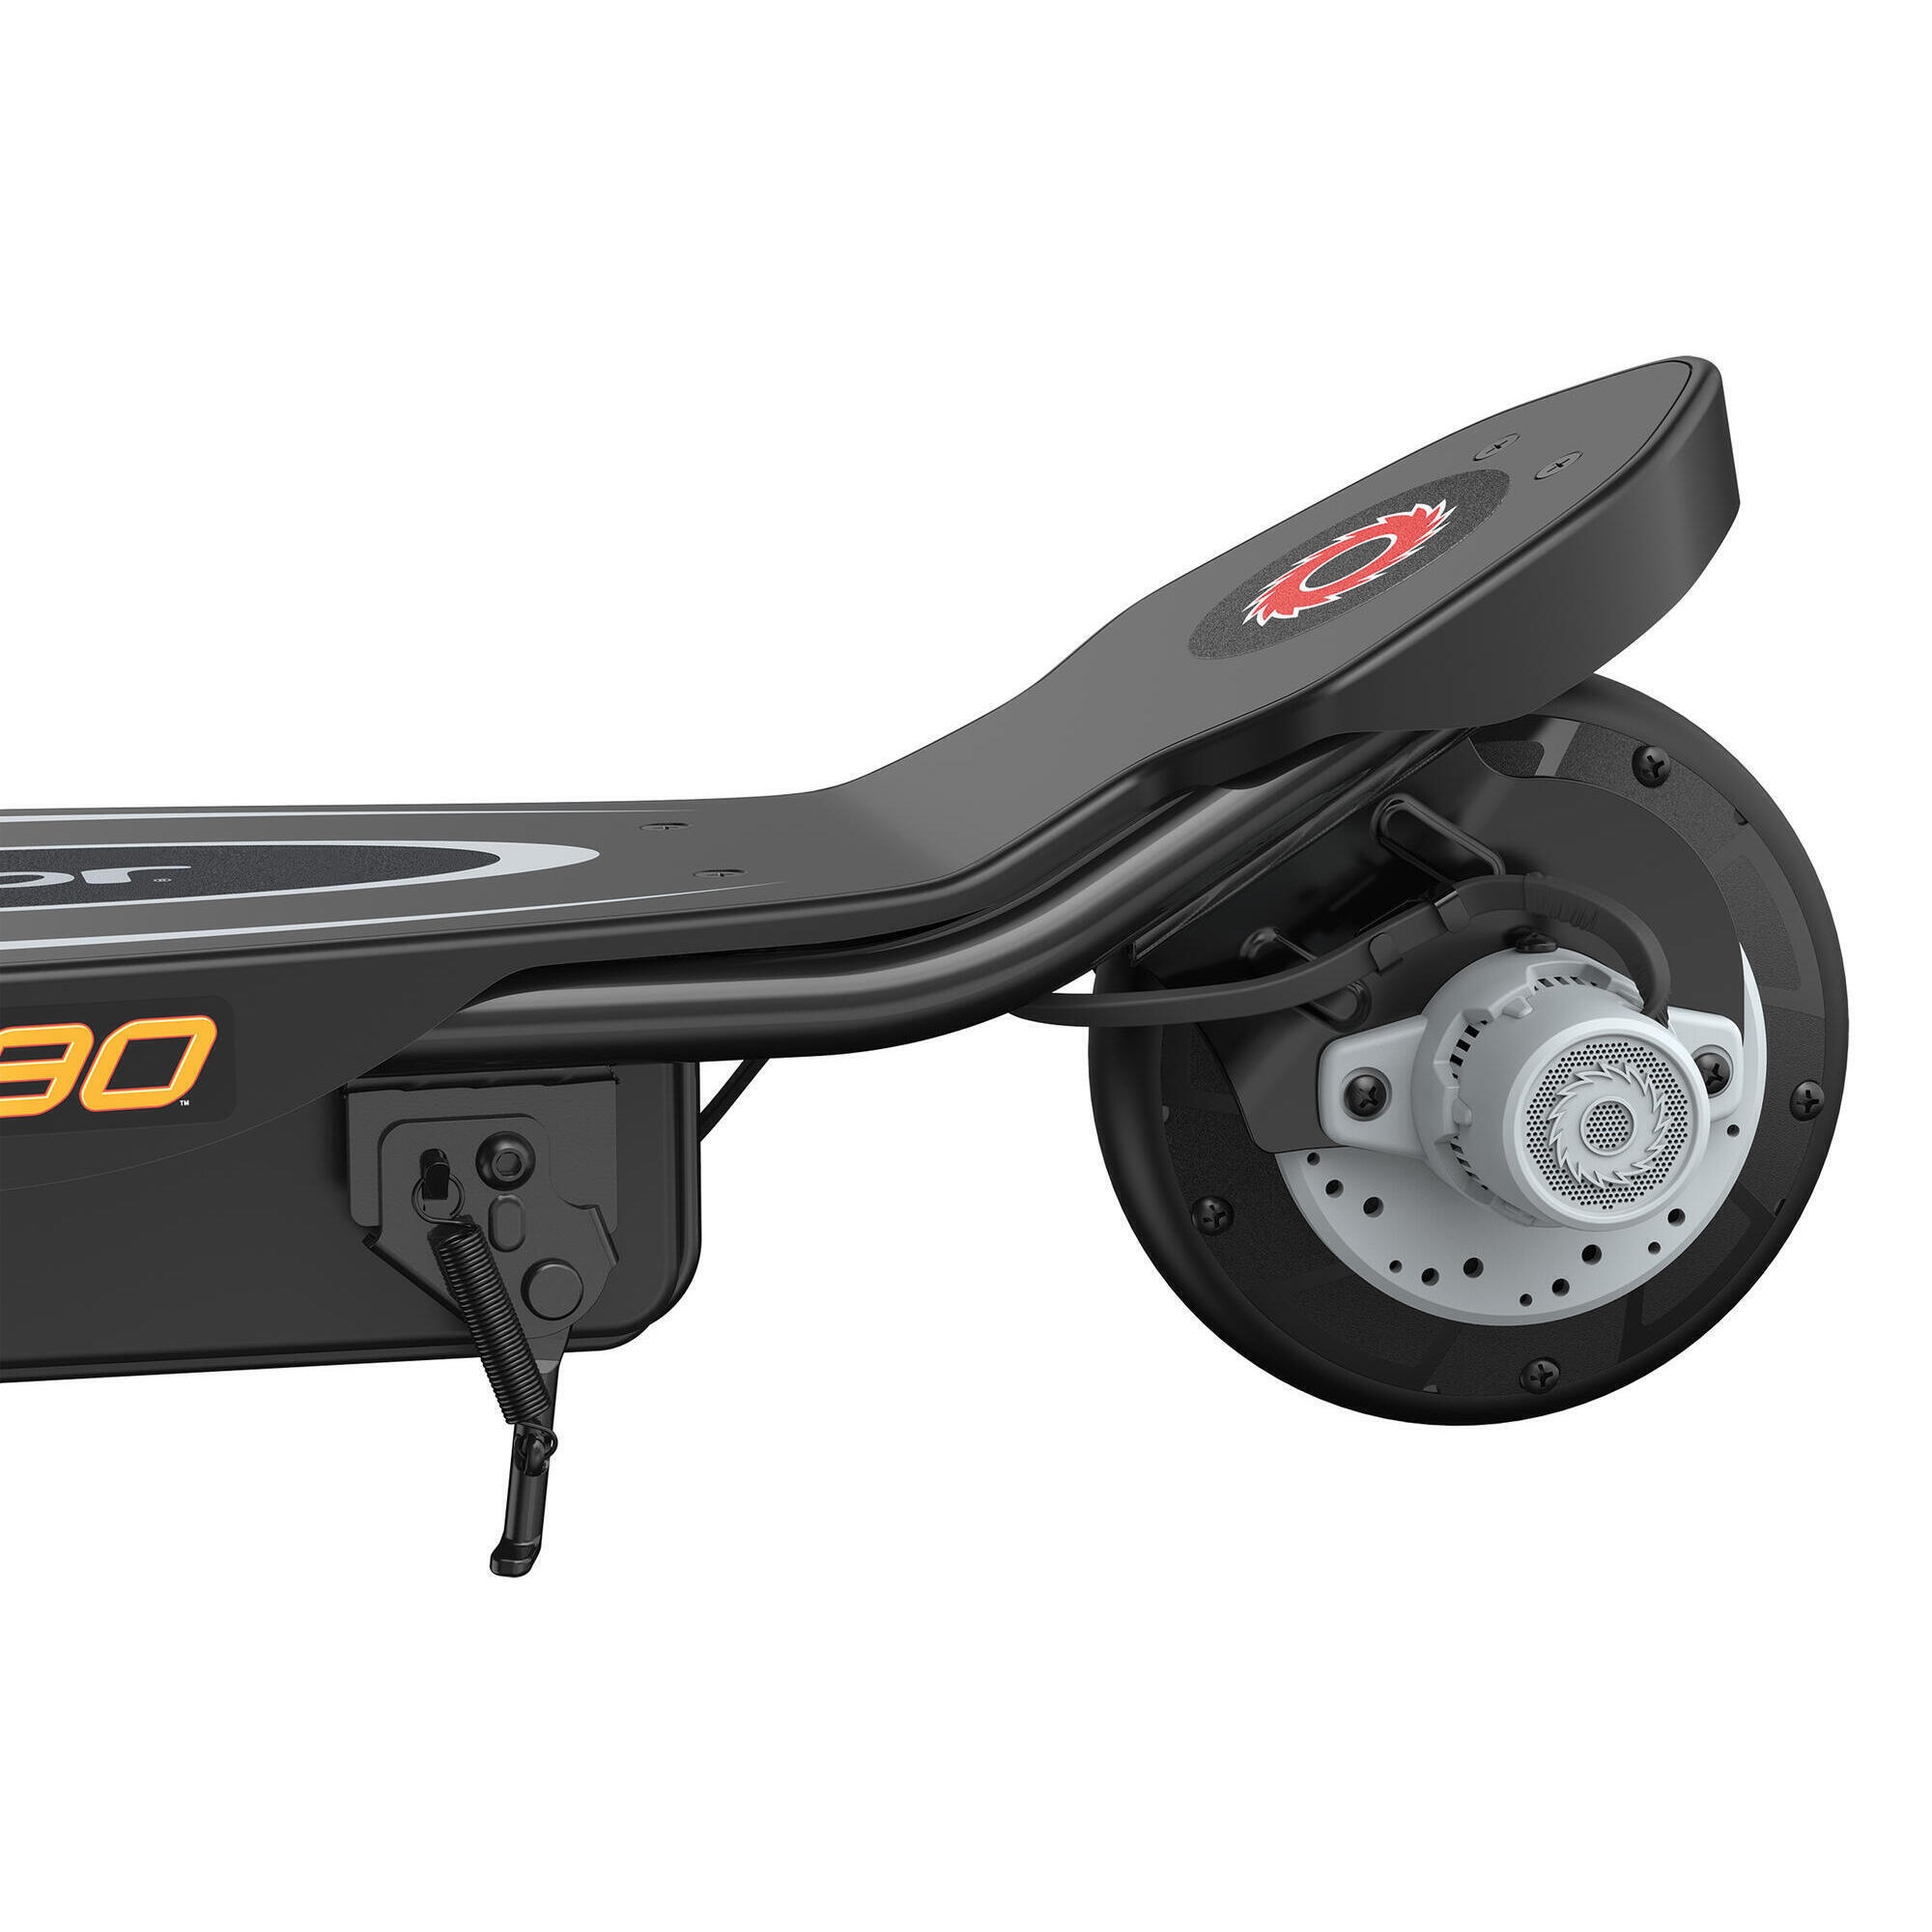 Razor Power Core E90 12 Volt Scooter - Black 3/7